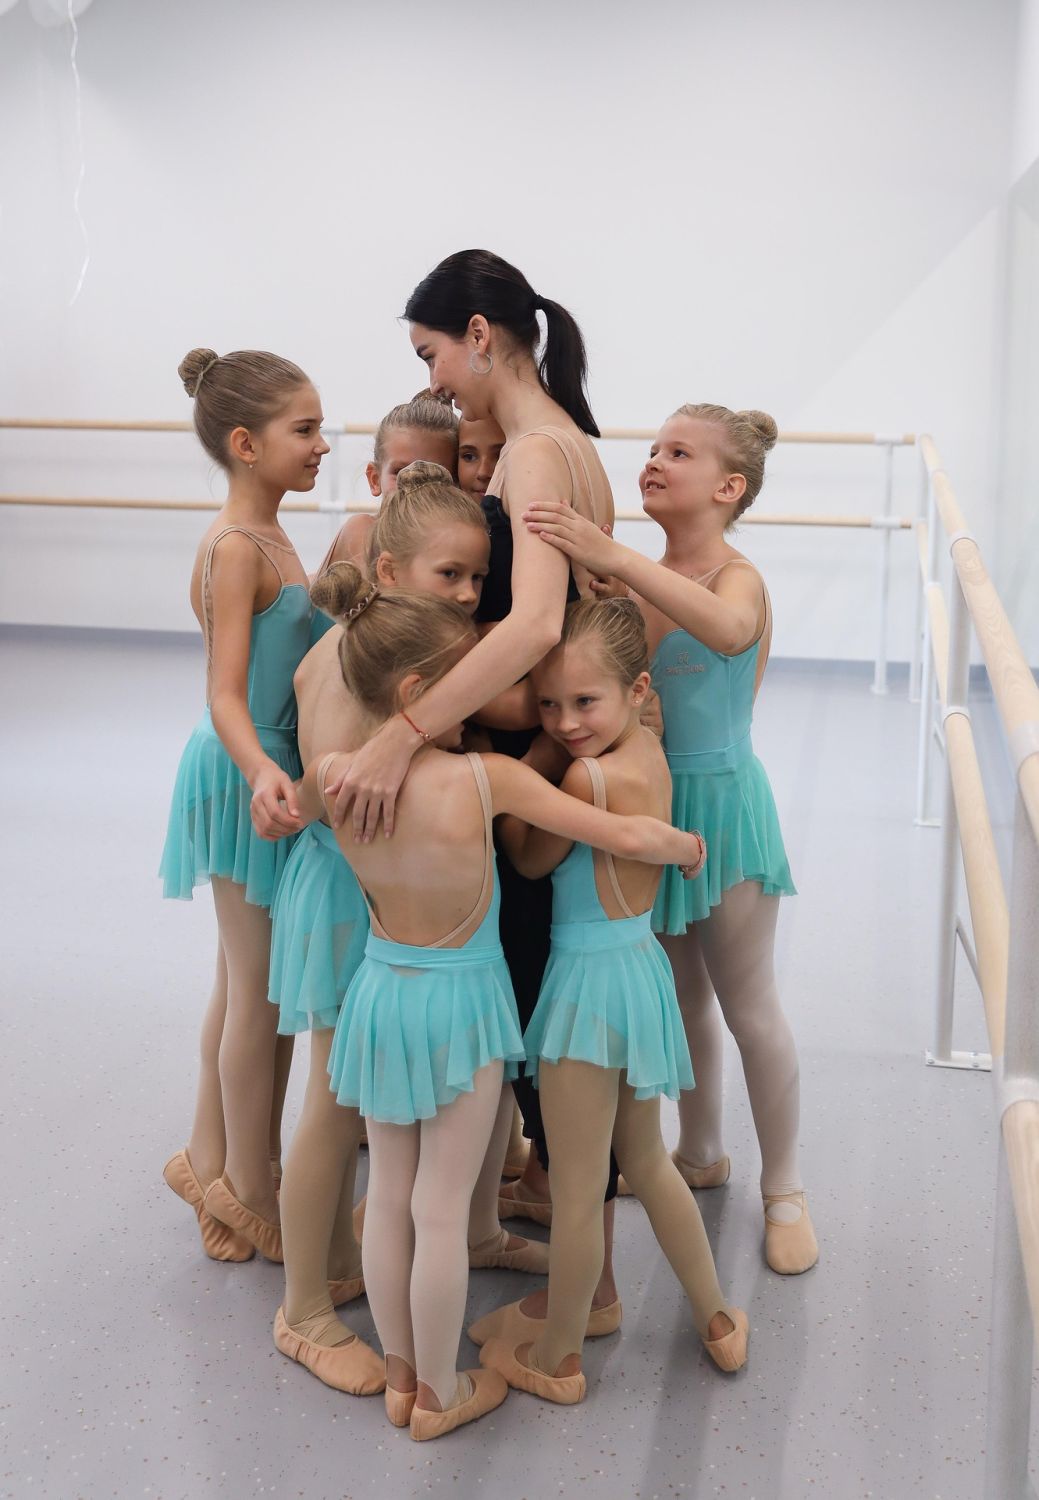 Pourquoi les petites filles raffolent de la danse classique ?